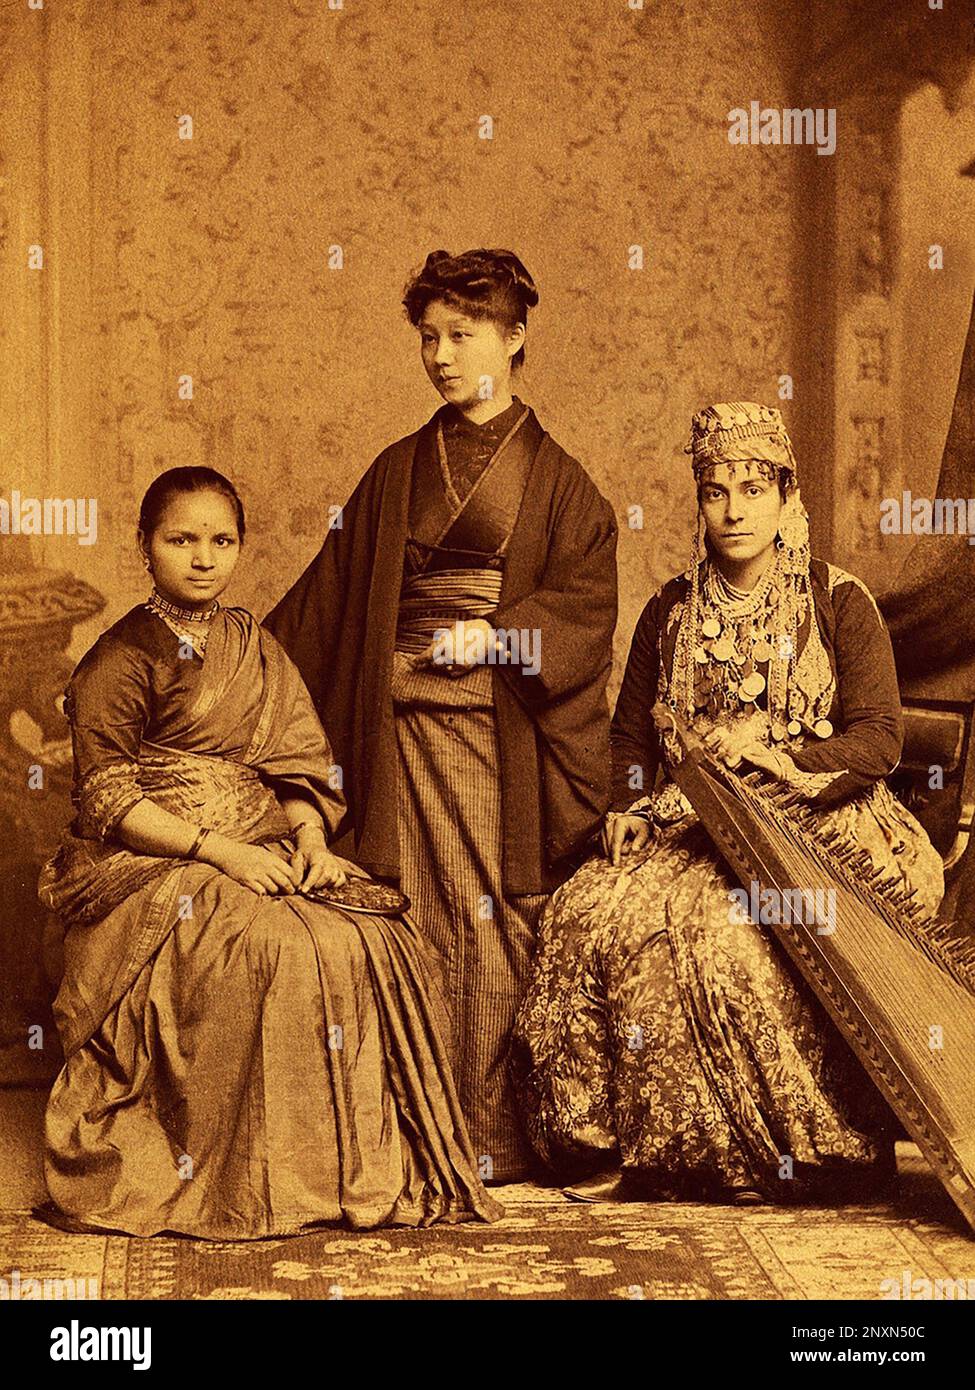 Ärzte Anandibai Joshee (links) aus Indien, Kei Okami (Mitte) aus Japan und Sabat M. Islambouli (rechts) aus Ottoman Syrien, am Women's Medical College of Pennsylvania. Alle drei waren die ersten Frauen aus ihren jeweiligen Ländern, die einen Abschluss in westlicher Medizin an einer westlichen Universität erhielten. Foto vom 10. Oktober 1885./n Stockfoto